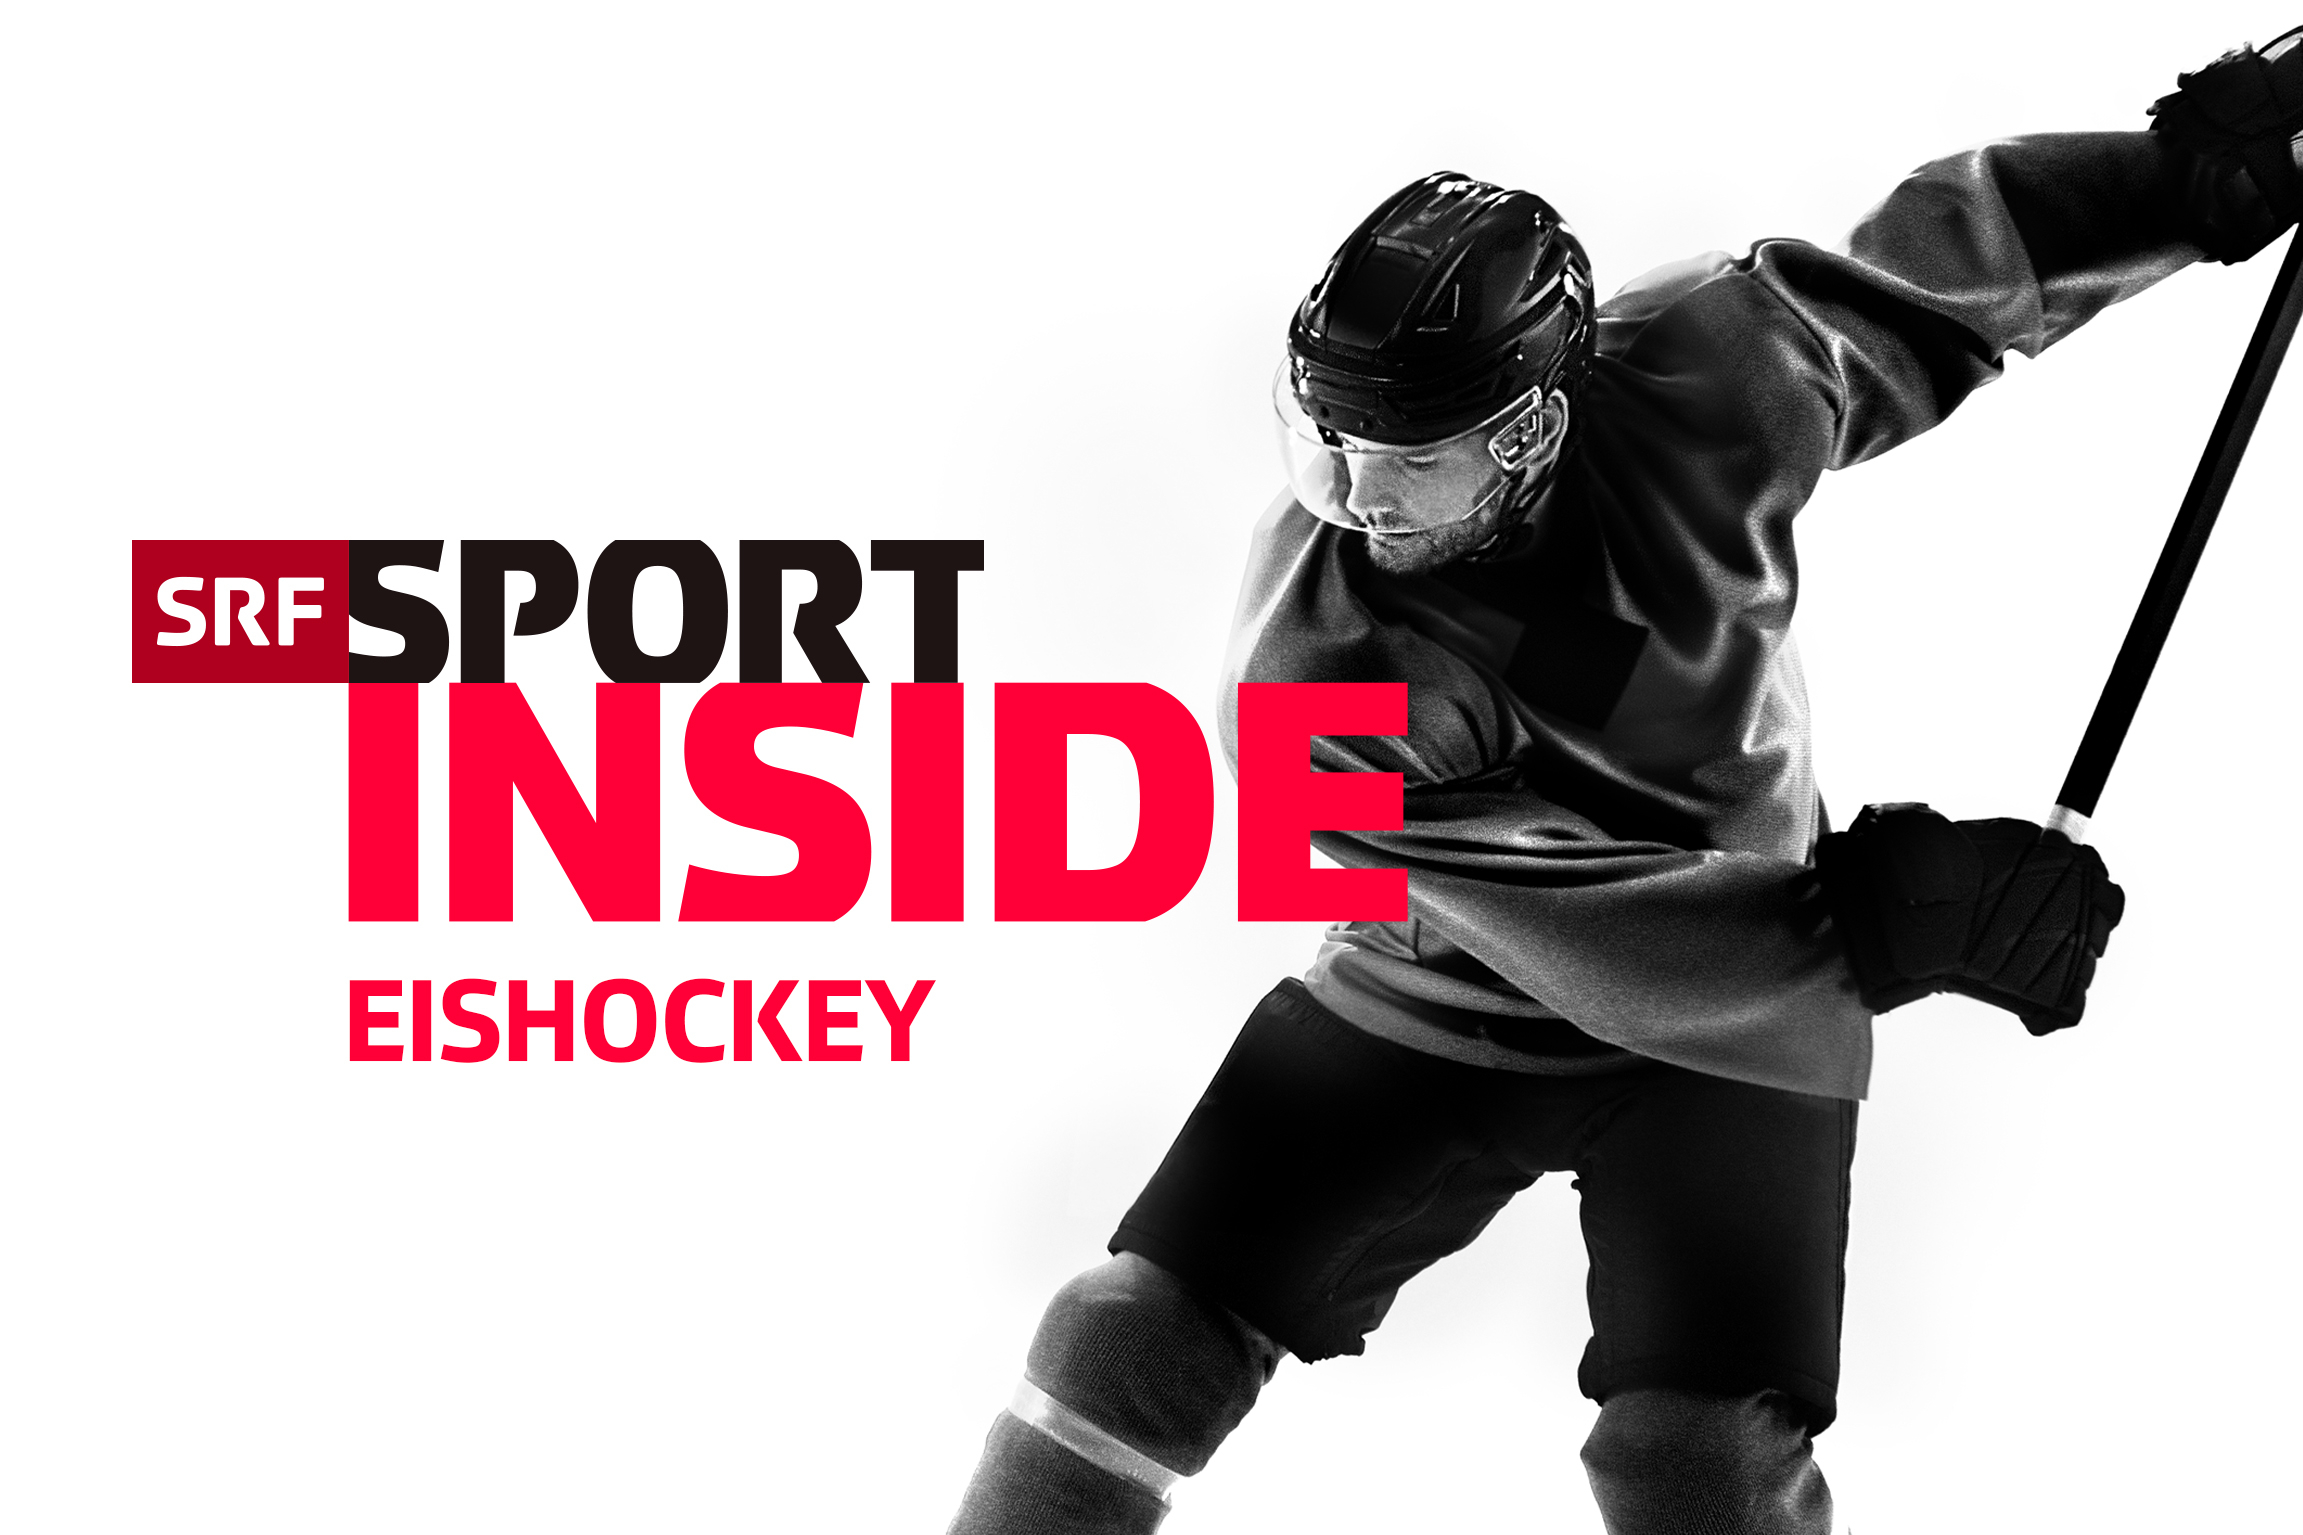 SRF Sport Inside Eishockey